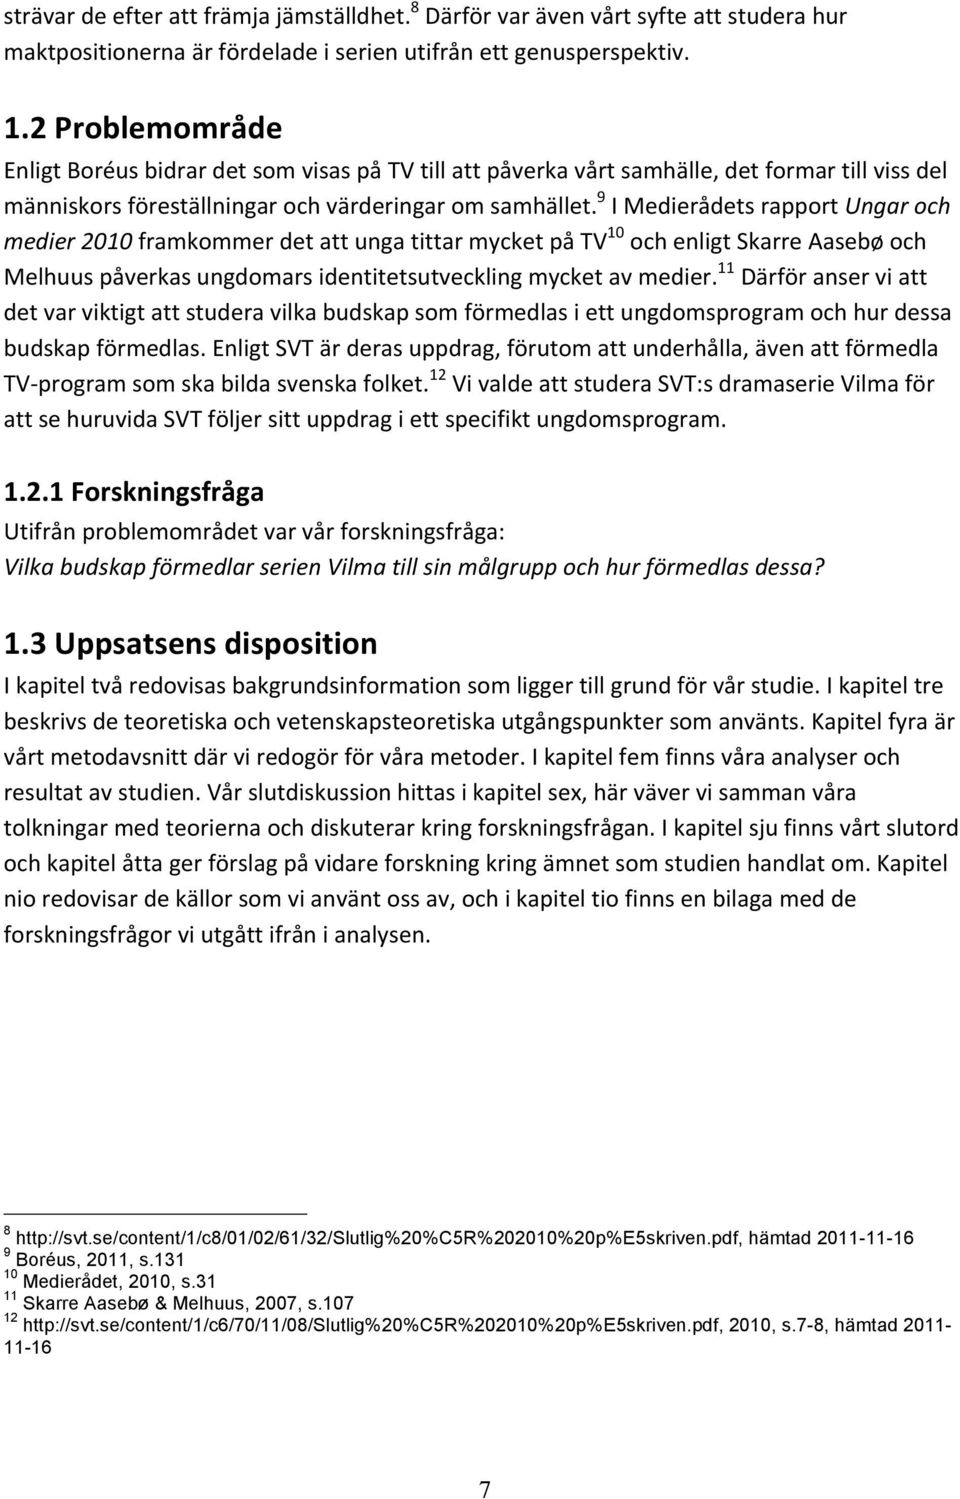 9 I Medierådets rapport Ungar och medier 2010 framkommer det att unga tittar mycket på TV 10 och enligt Skarre Aasebø och Melhuus påverkas ungdomars identitetsutveckling mycket av medier.